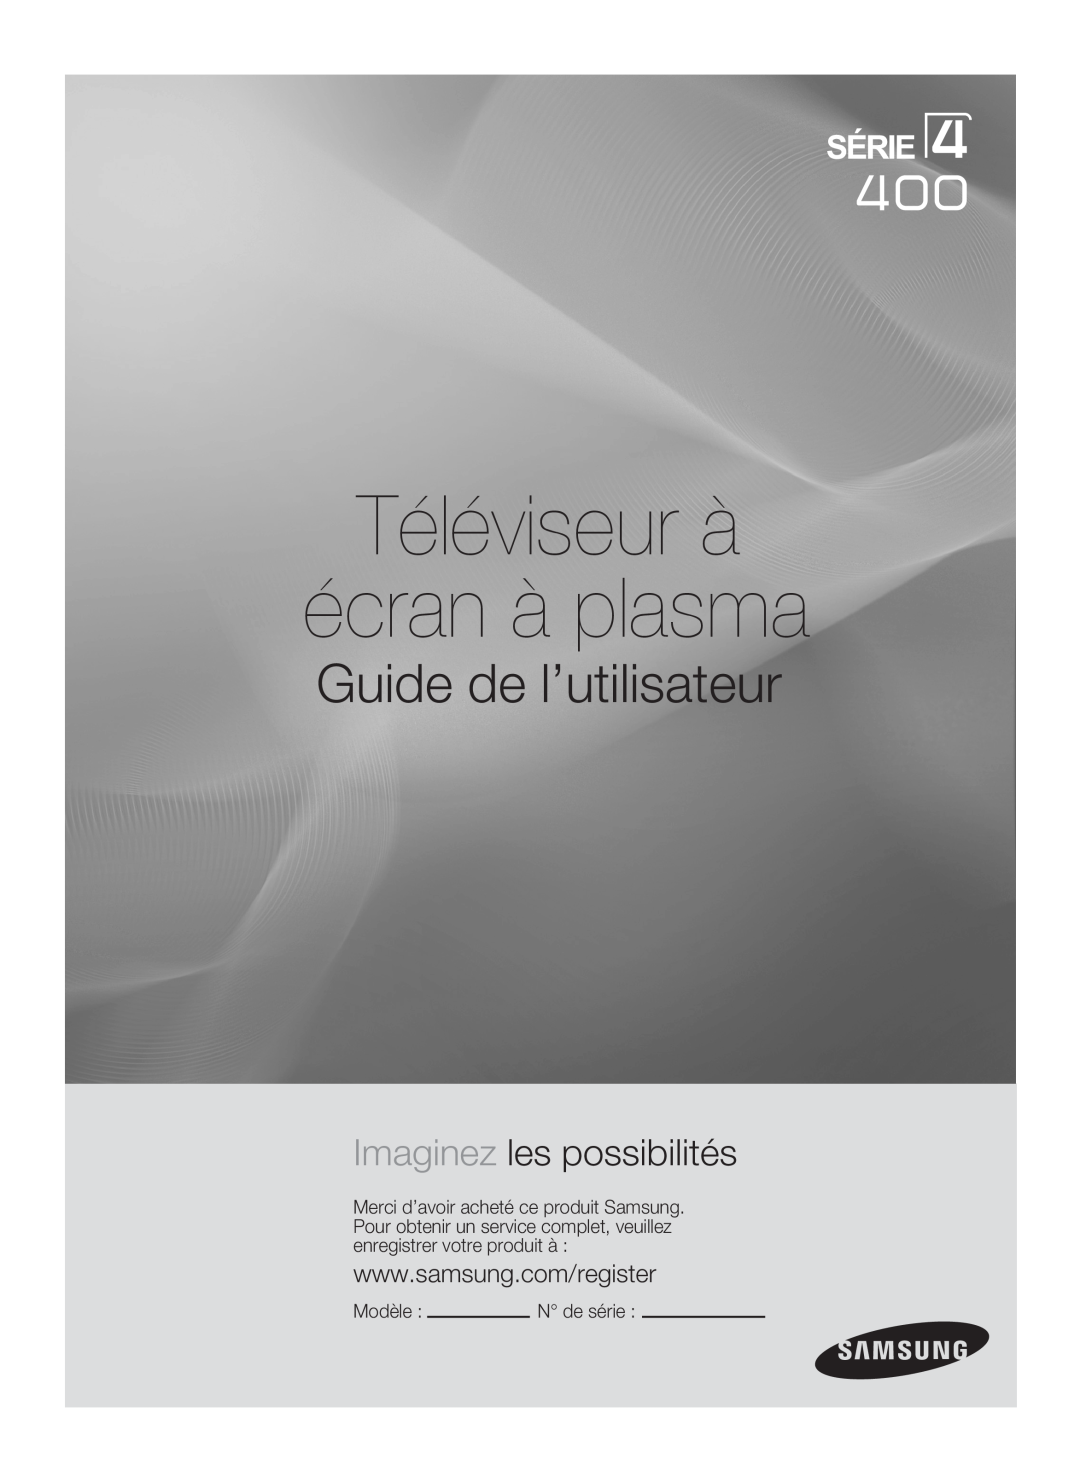 Samsung BN68-02426A-00 user manual Guide de l’utilisateur, Imaginez les possibilités, Téléviseur à écran à plasma, Modèle  